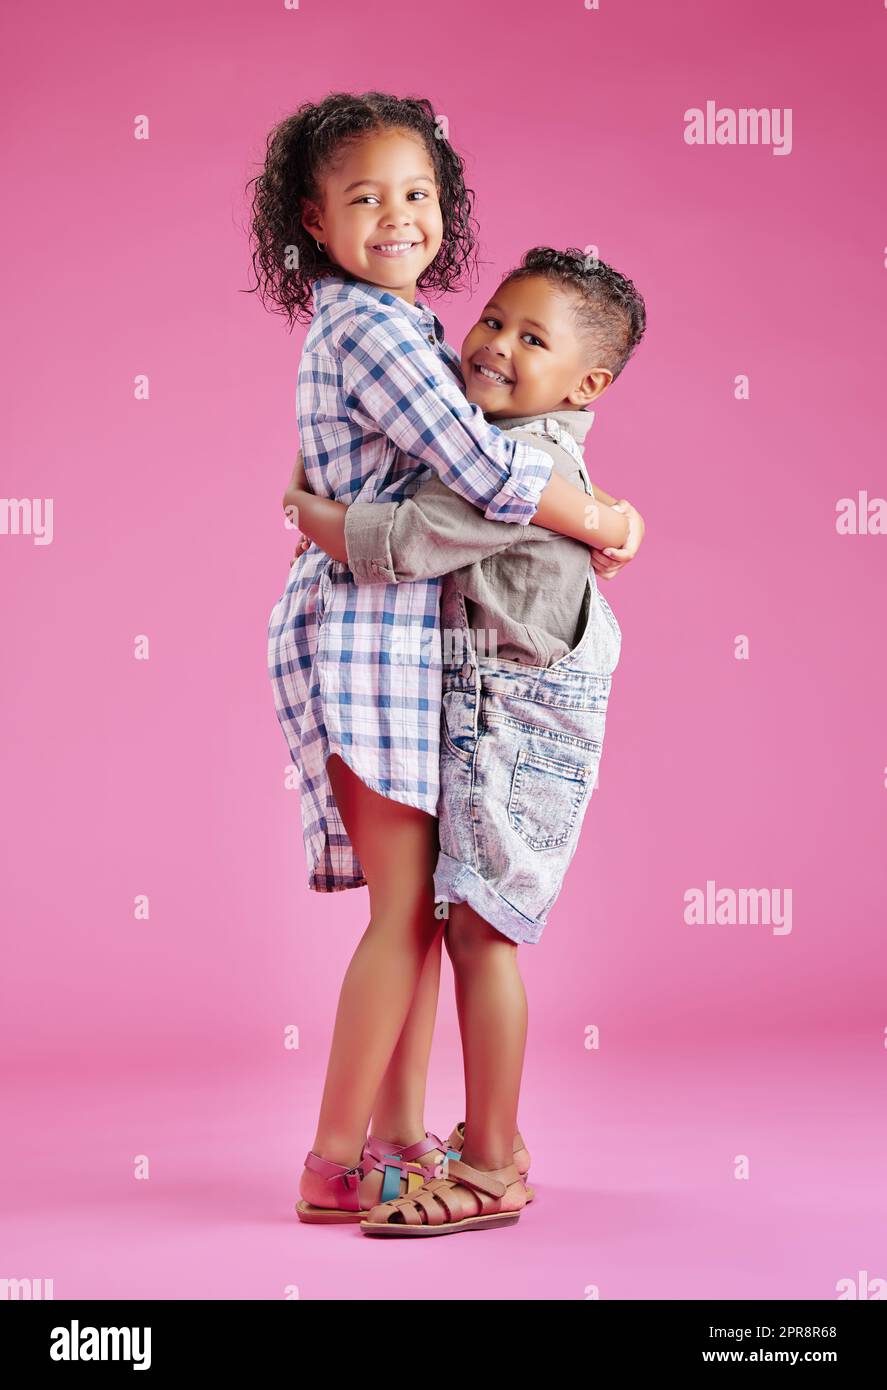 Zwei Kinder posieren nur und sind liebevoll vor einem rosa Copyspace Hintergrund. Afroamerikanische Mischrassengeschwister, die sich in einem Studio zusammenbinden Stockfoto